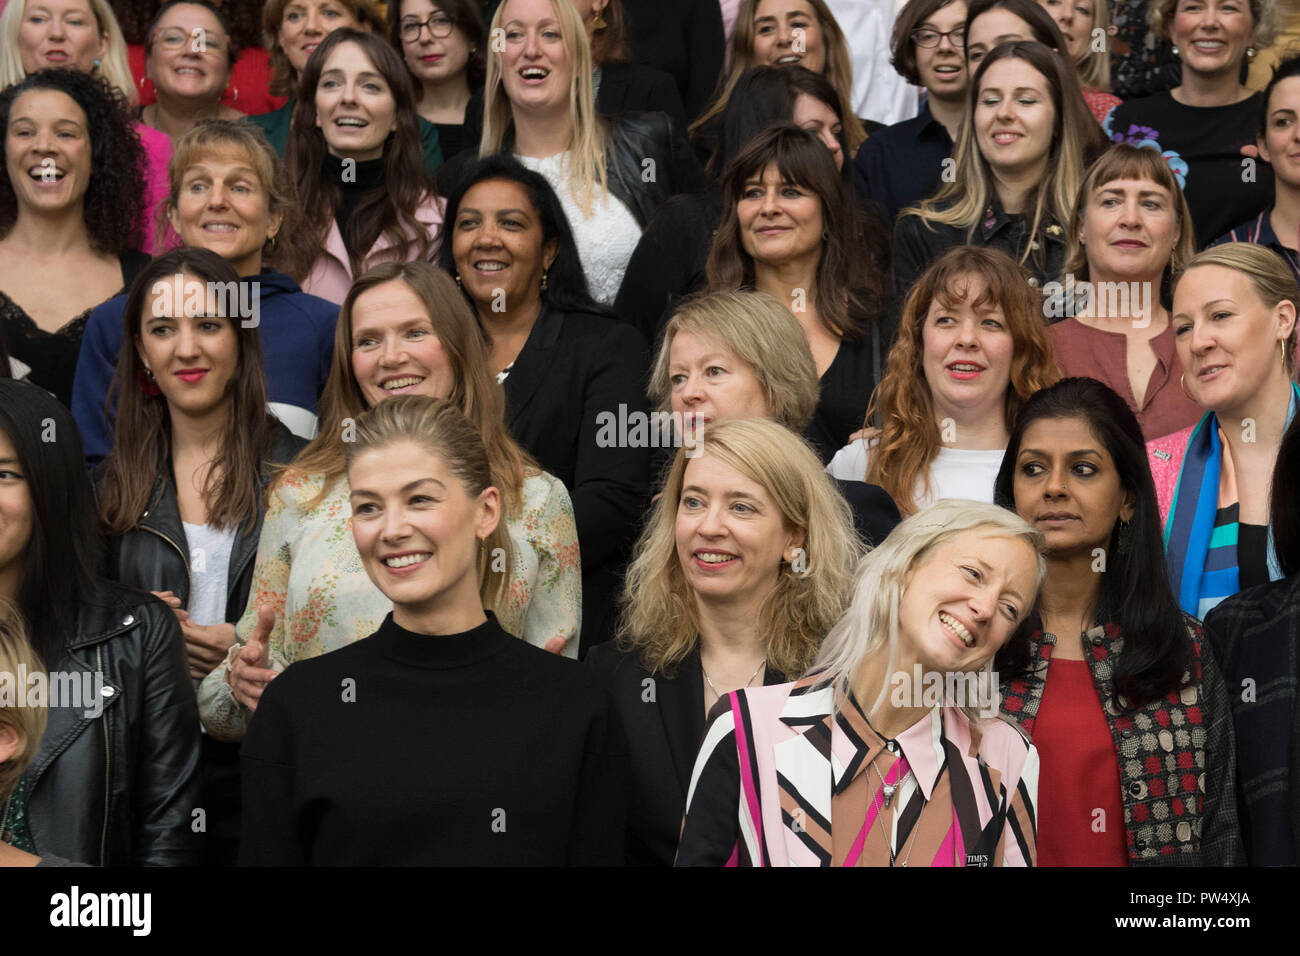 Les décideurs et acteurs du film posent pour une photo de groupe au British Film Institute Film Festival sur la rive sud de Londres pour marquer la contribution des femmes à l'industrie du film britannique. Banque D'Images